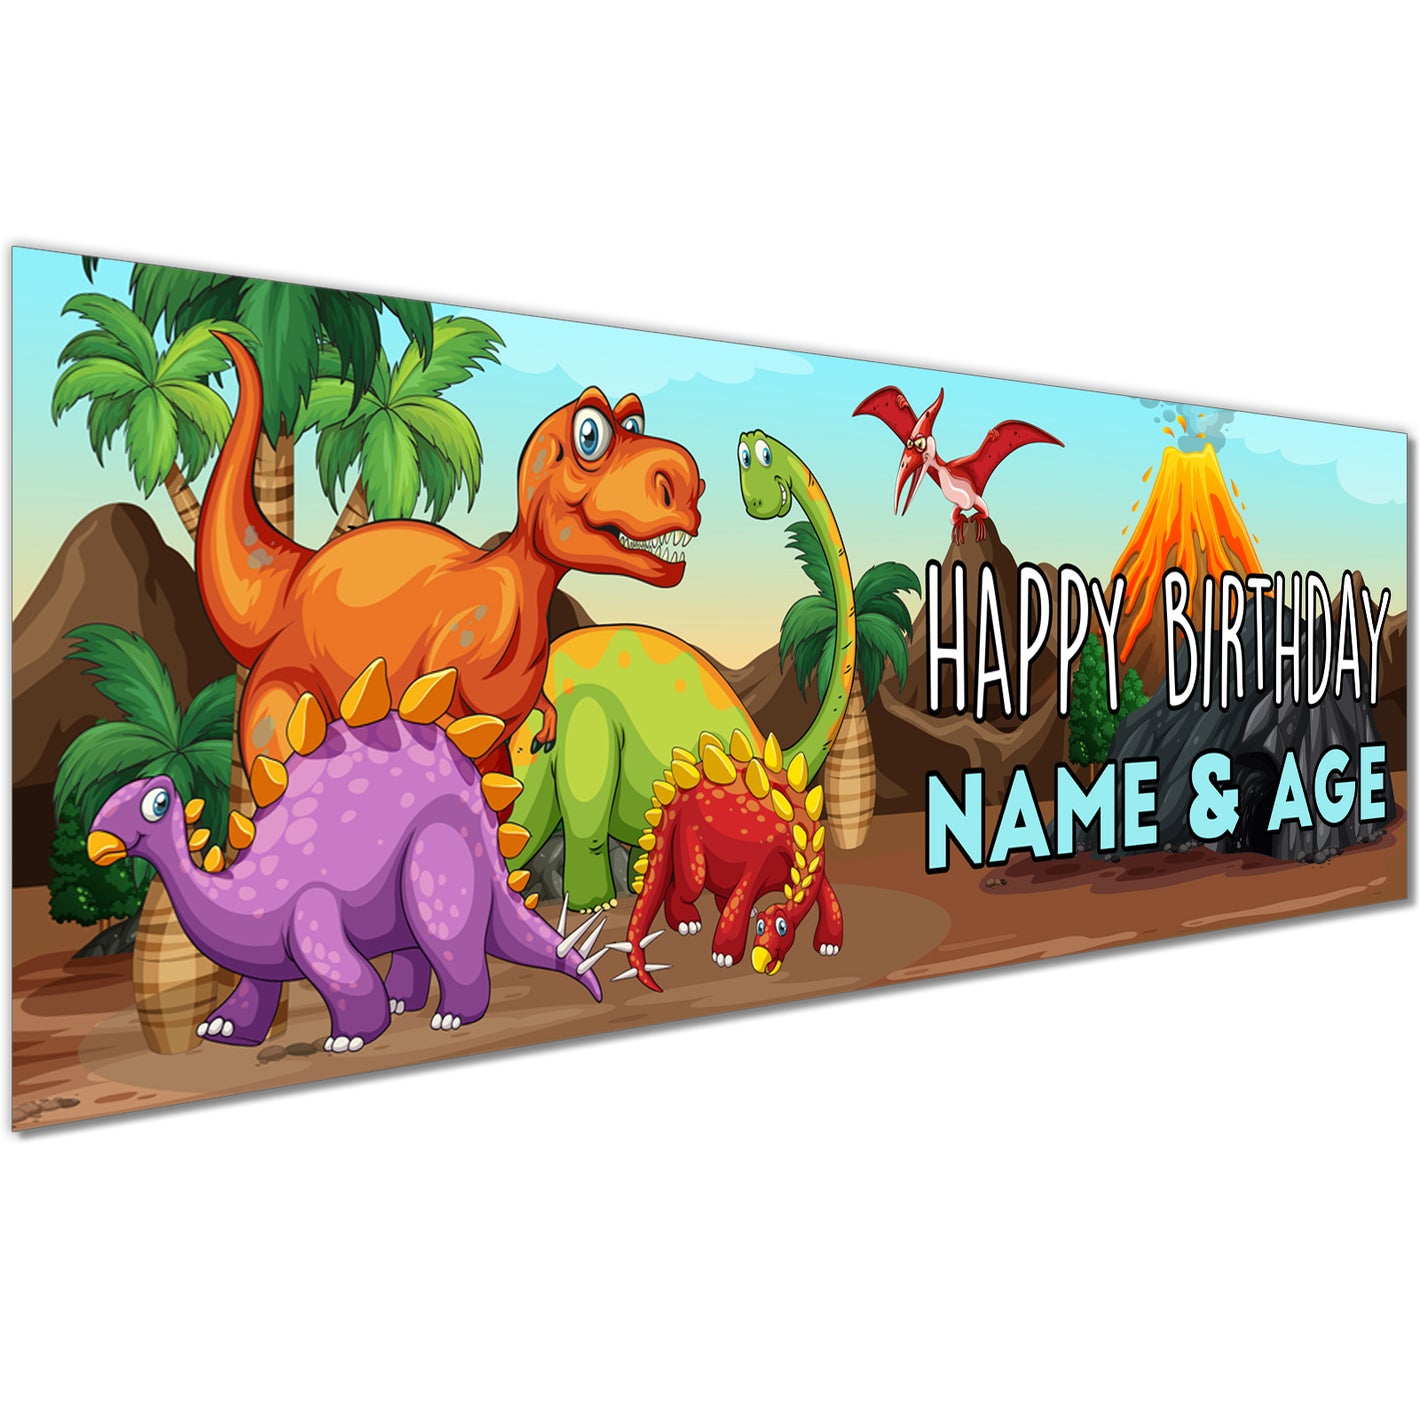 Kids Birthday Banner in Dinosaurs Design